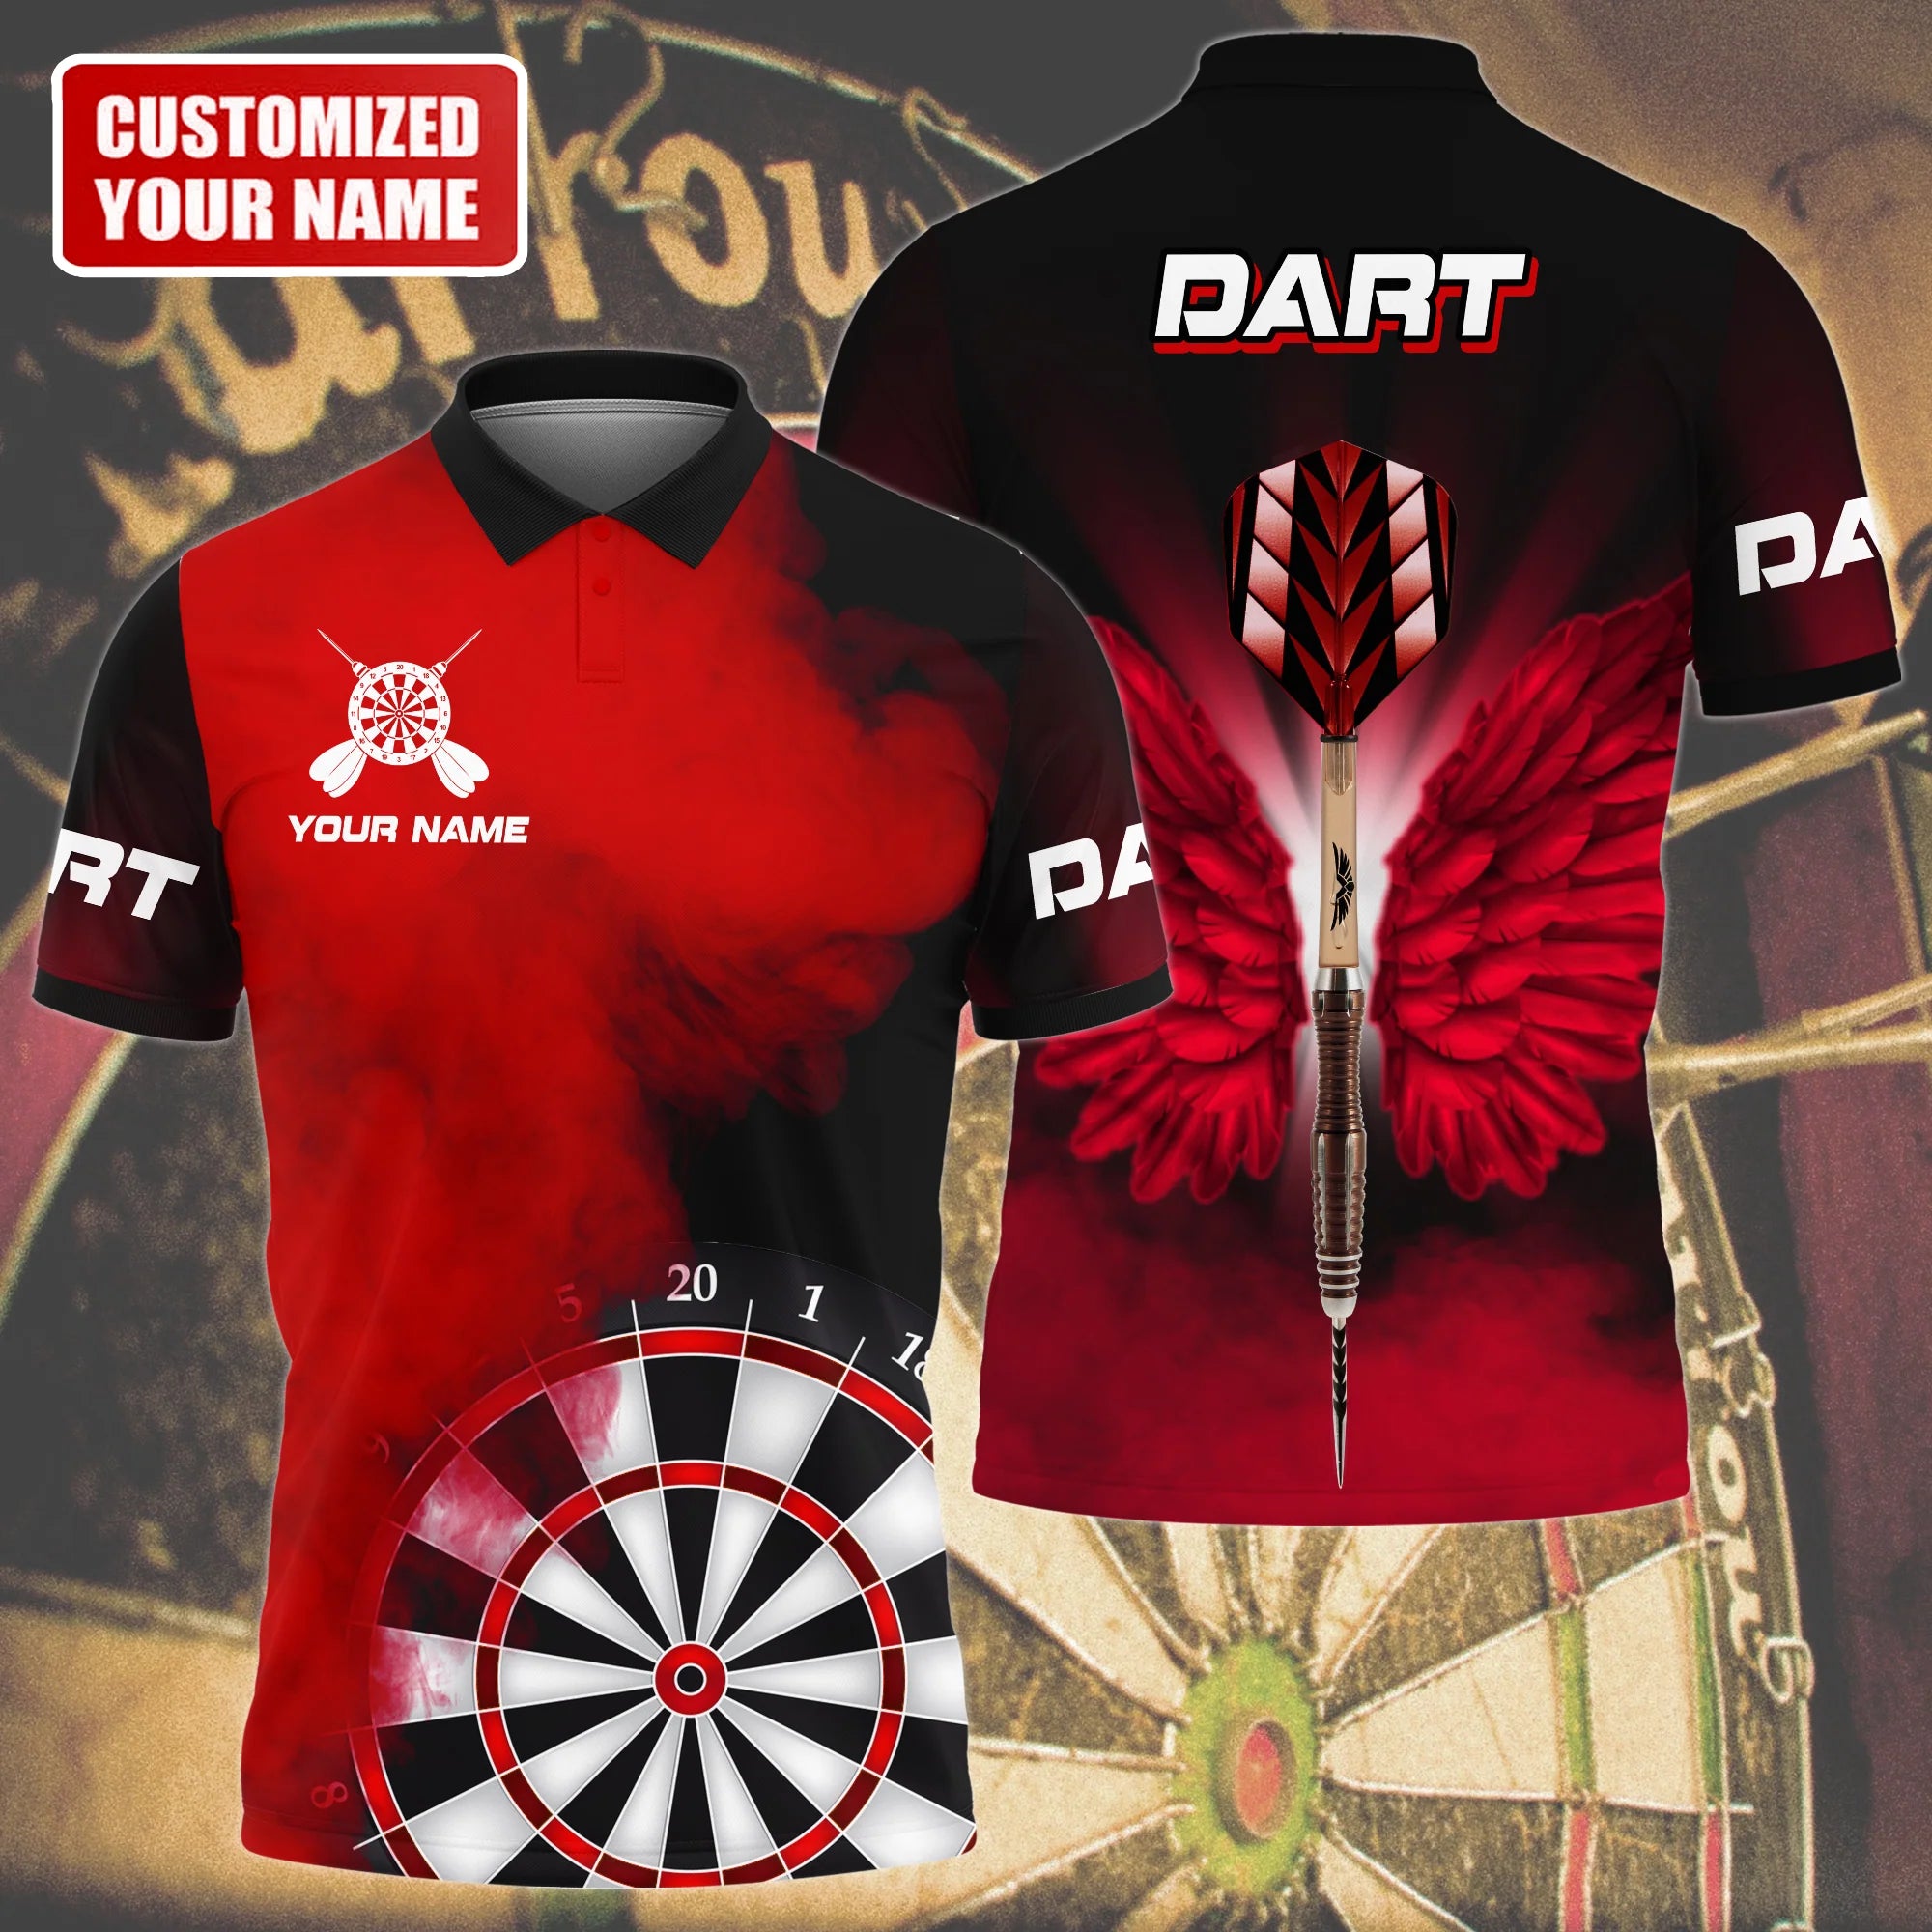 Personalized Dart 3D Shirt For Men, Dart Team, Birthday Gift For Dart Lover – DT048